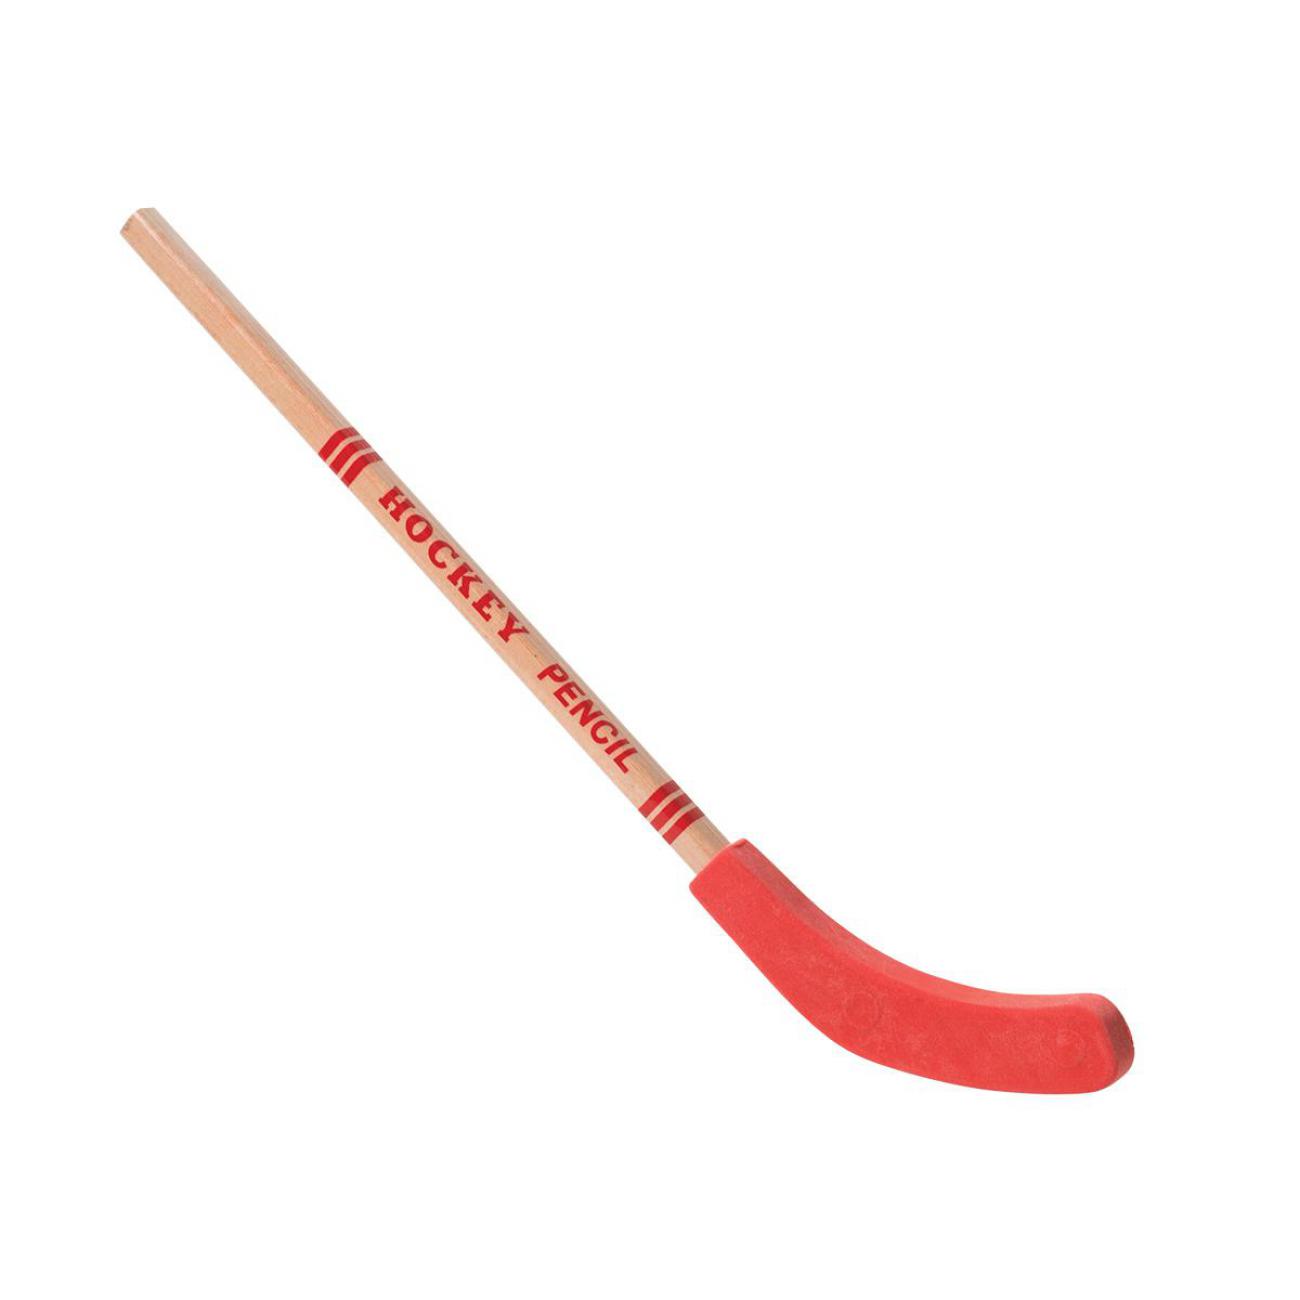  Hockey Pencil with Eraser 